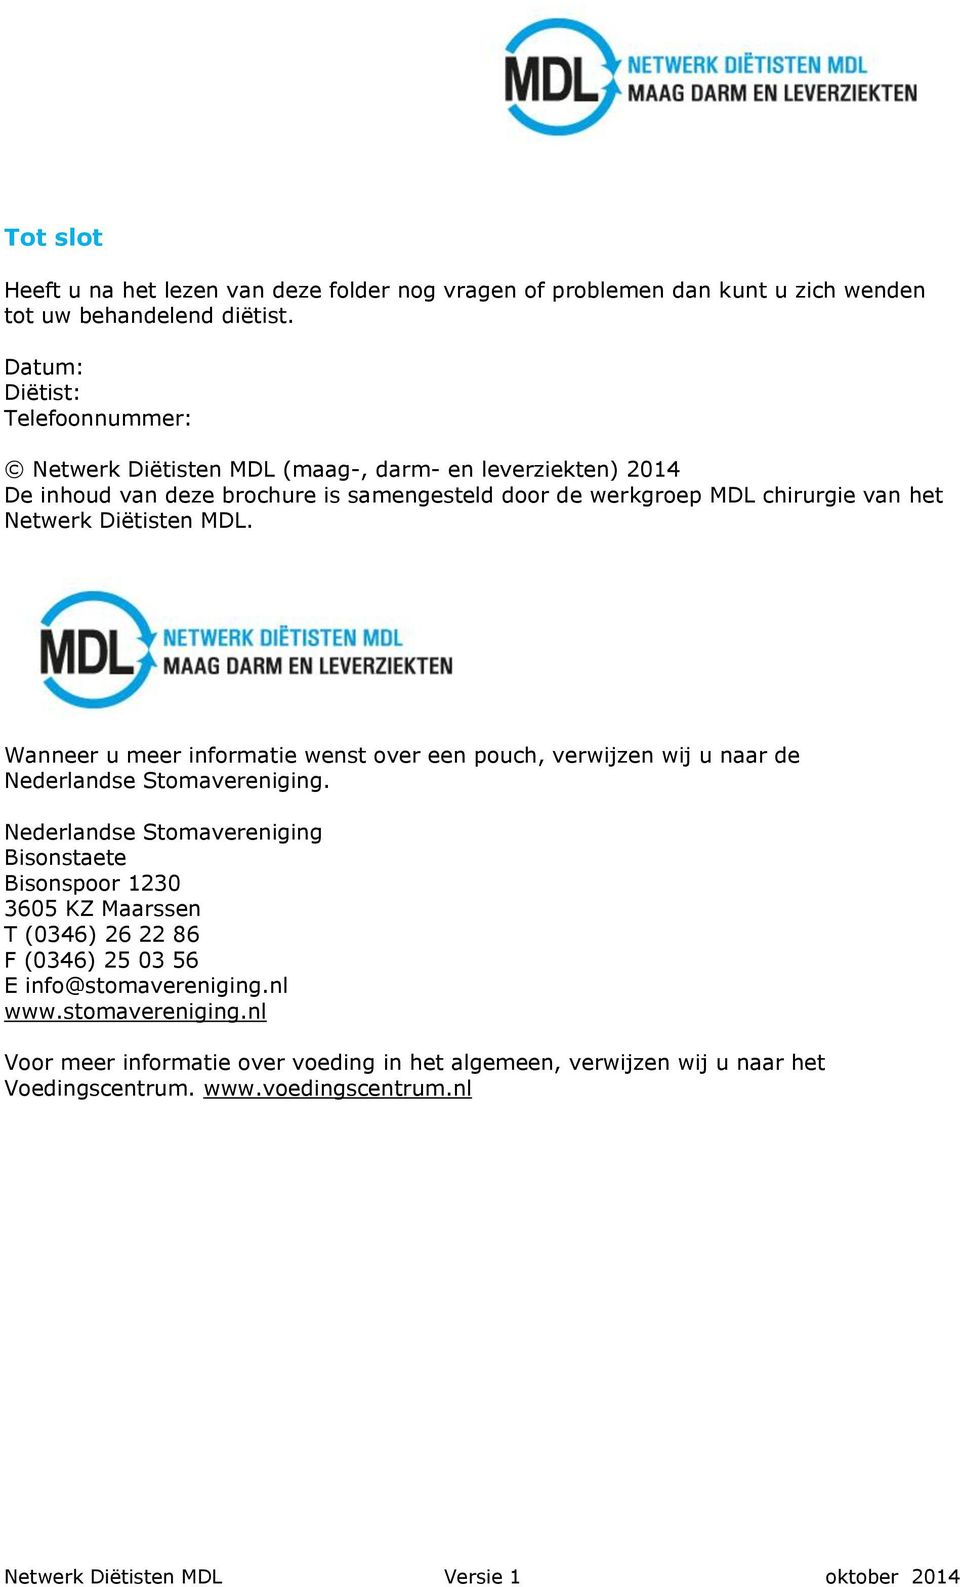 het Netwerk Diëtisten MDL. Wanneer u meer informatie wenst over een pouch, verwijzen wij u naar de Nederlandse Stomavereniging.